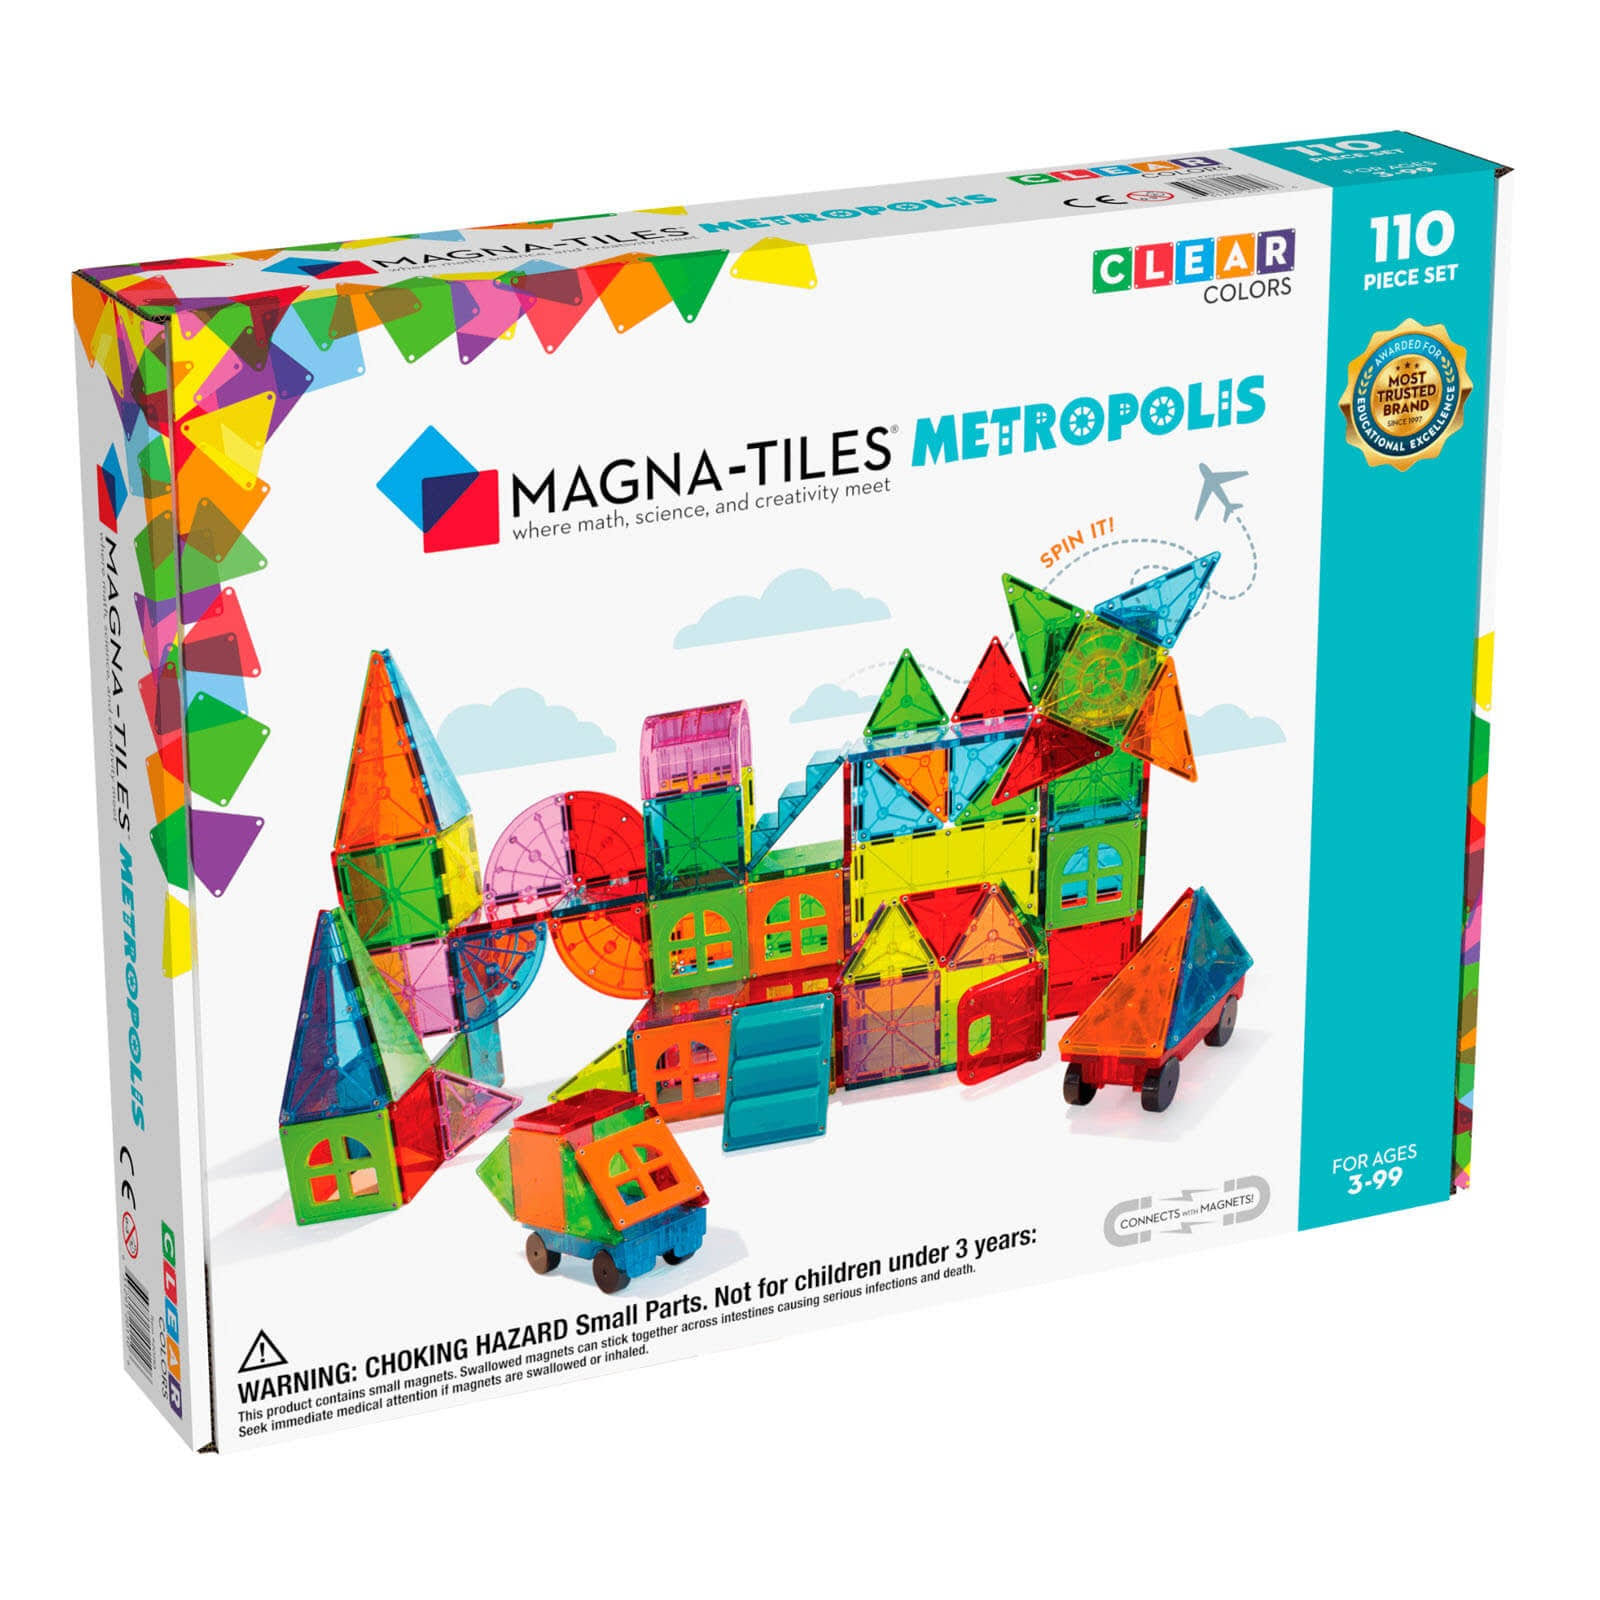 Magna Tiles Metropolis 110 Piece Set 3D Magnetic Building Tiles